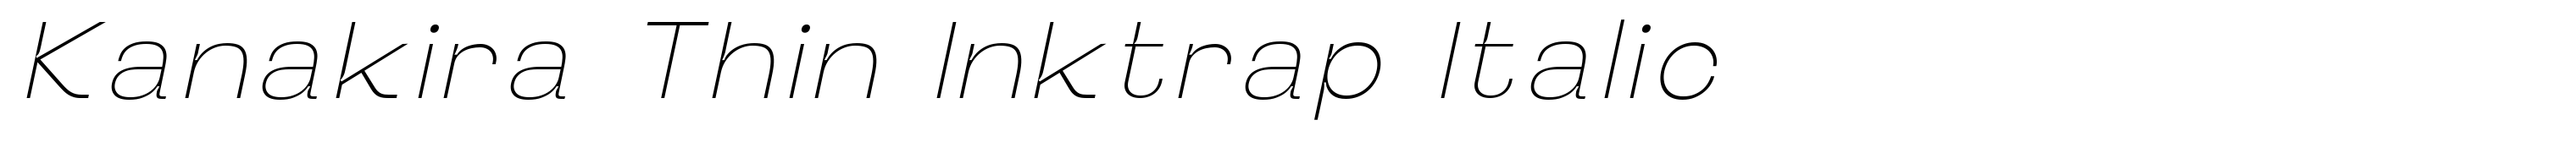 Kanakira Thin Inktrap Italic